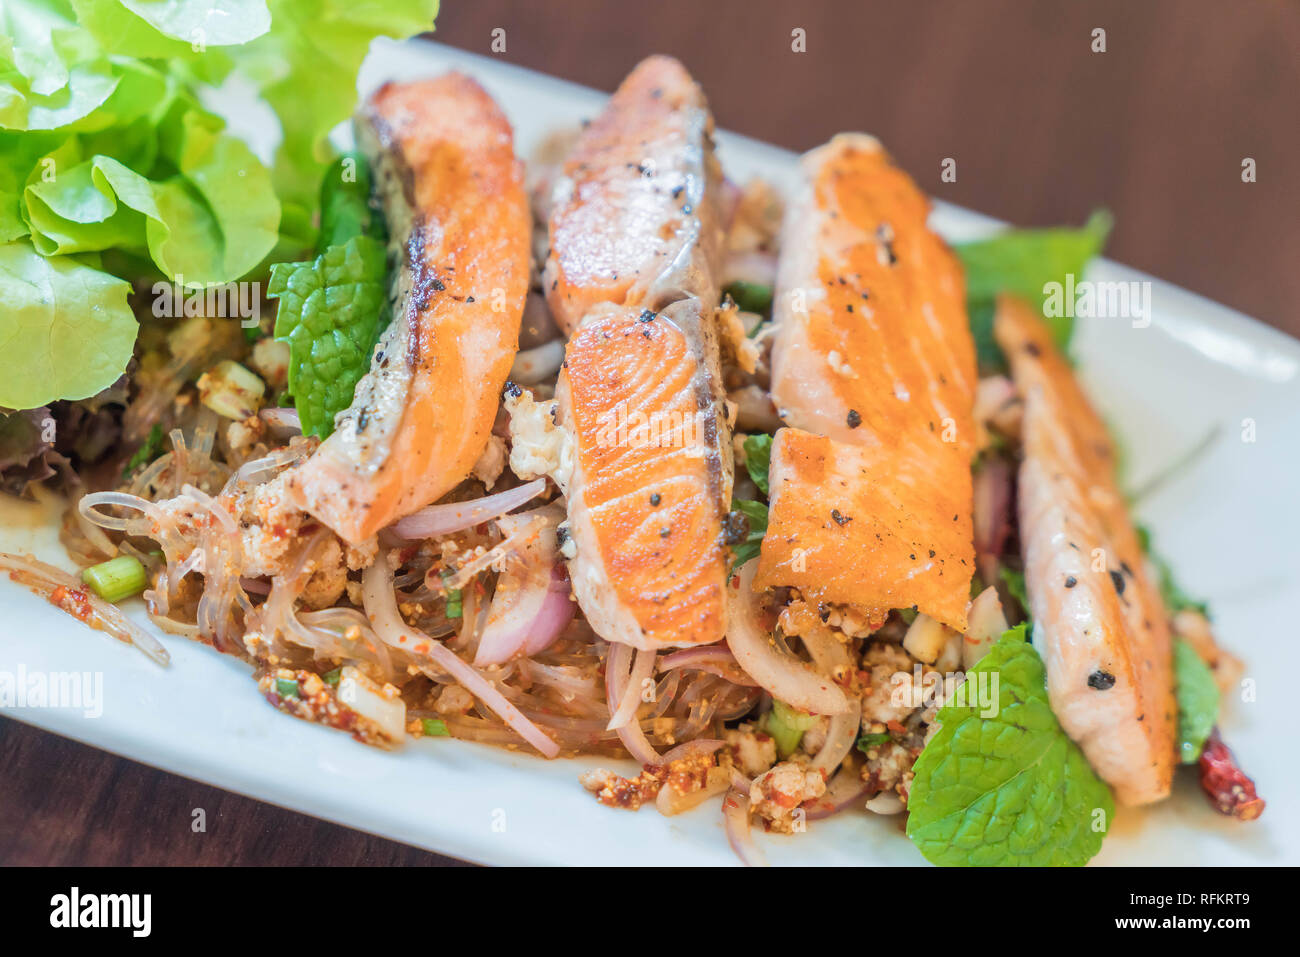 Spicy salmon sald. Thai style salad. Stock Photo